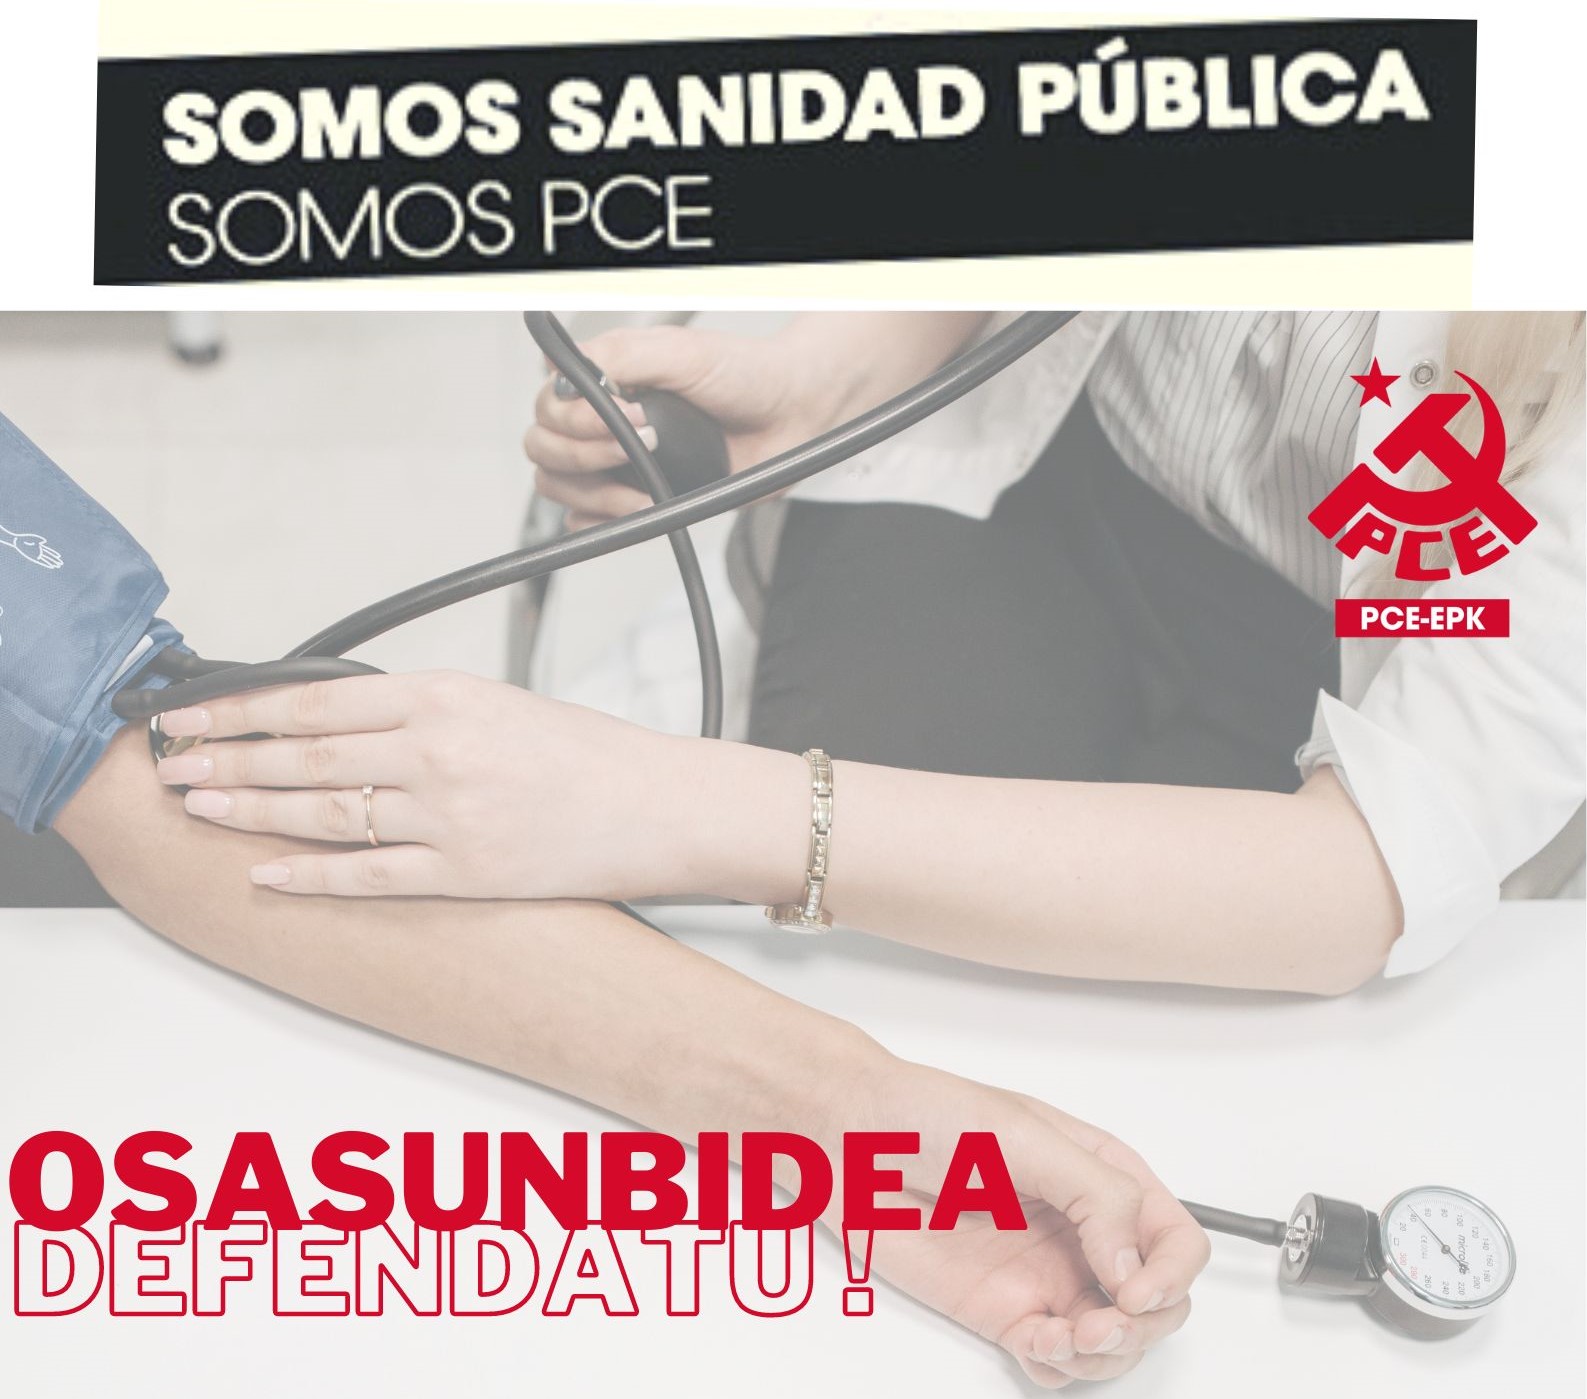 El PCE-EPK insta al Gobierno de Navarra a reforzar el sistema público sanitario y rechaza una posible eliminación de la exclusividad de los médicos